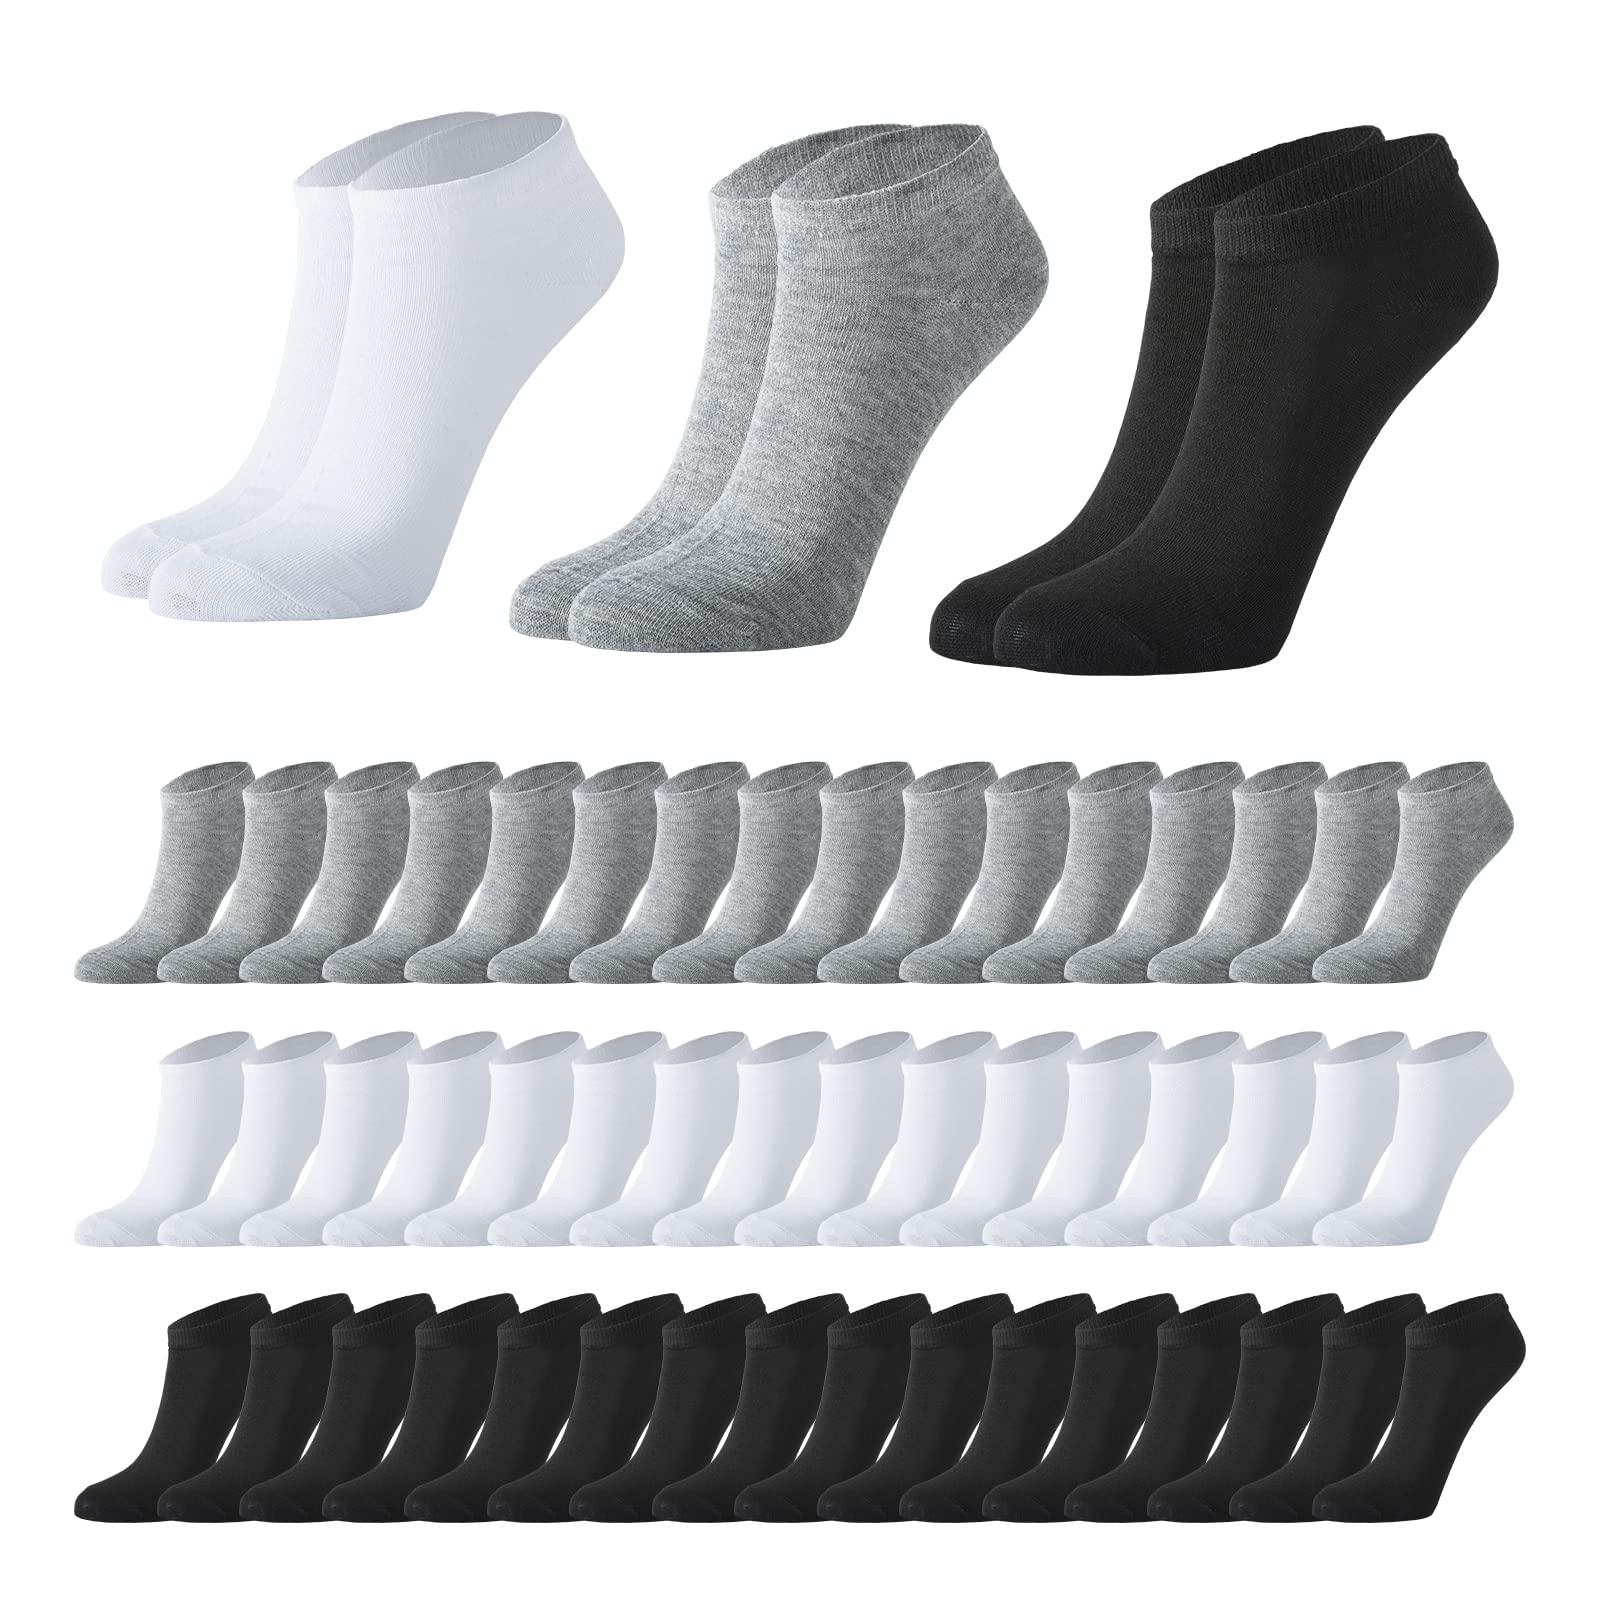 160 Pairs Mens Thin Low Cut Ankle Socks Athletic Moisture Socks Casual Sports Socks Bulk Pack for Homeless Unisex Men Women